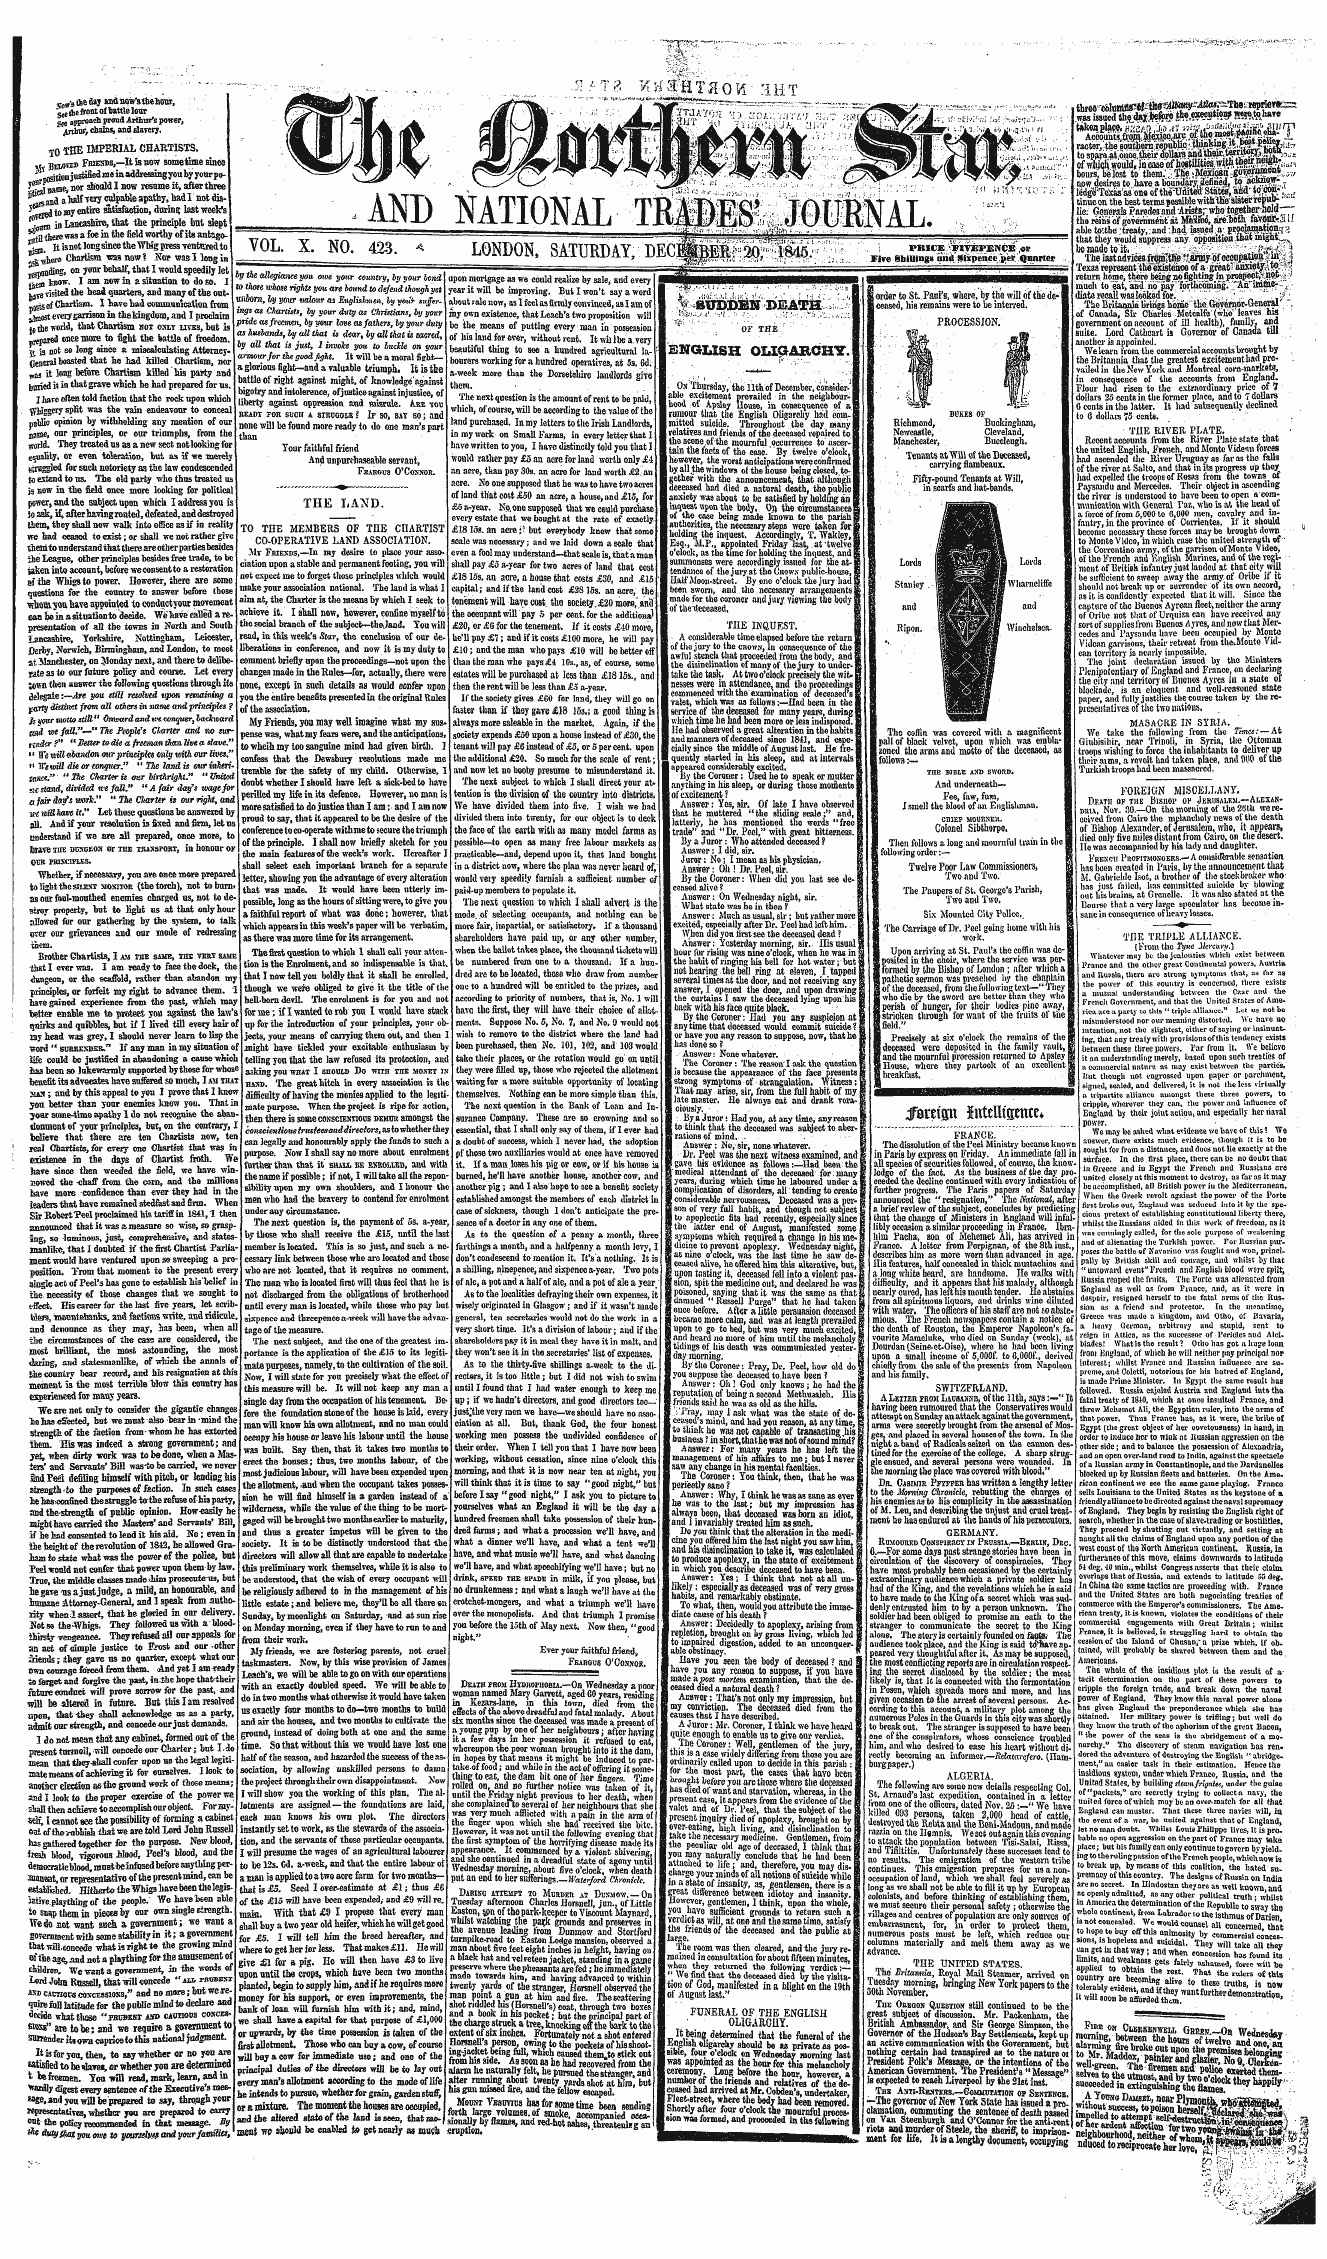 Northern Star (1837-1852): jS F Y, 4th edition - Flre On Cmrkentfell Gheem —Oil W^N^A,,, ...